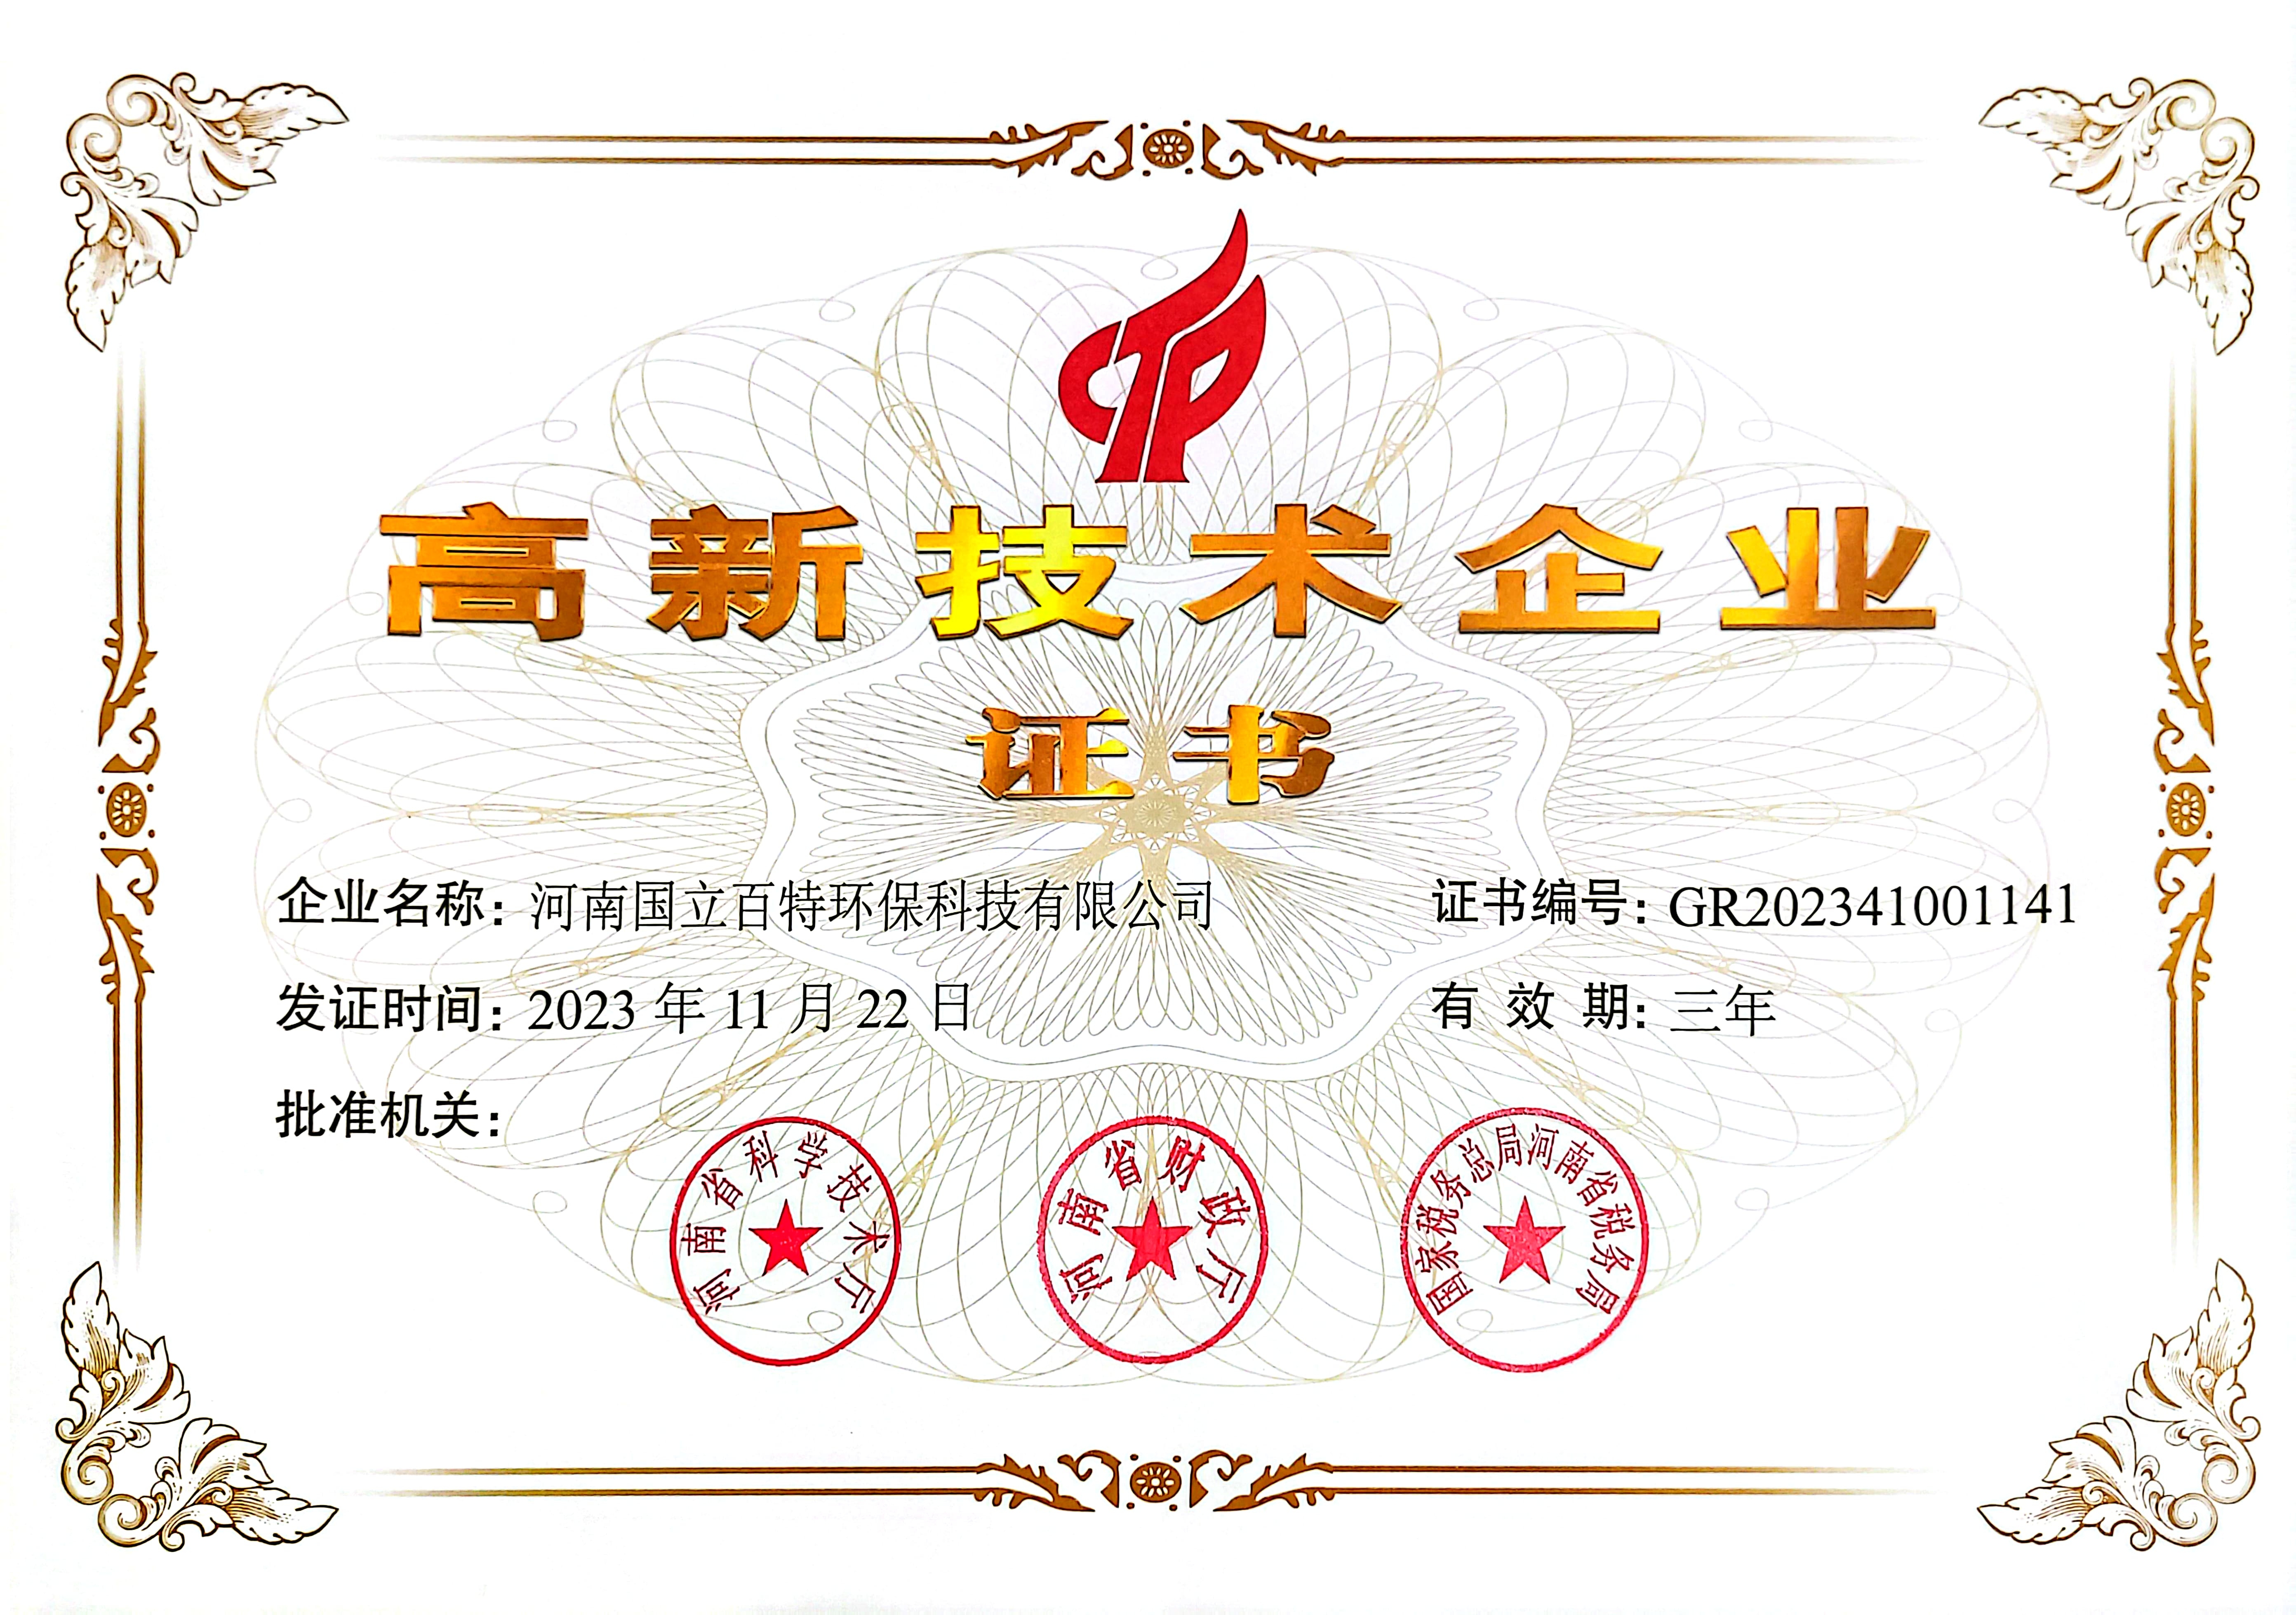 59599美高梅游戏官网app成功通过高新技术企业认证